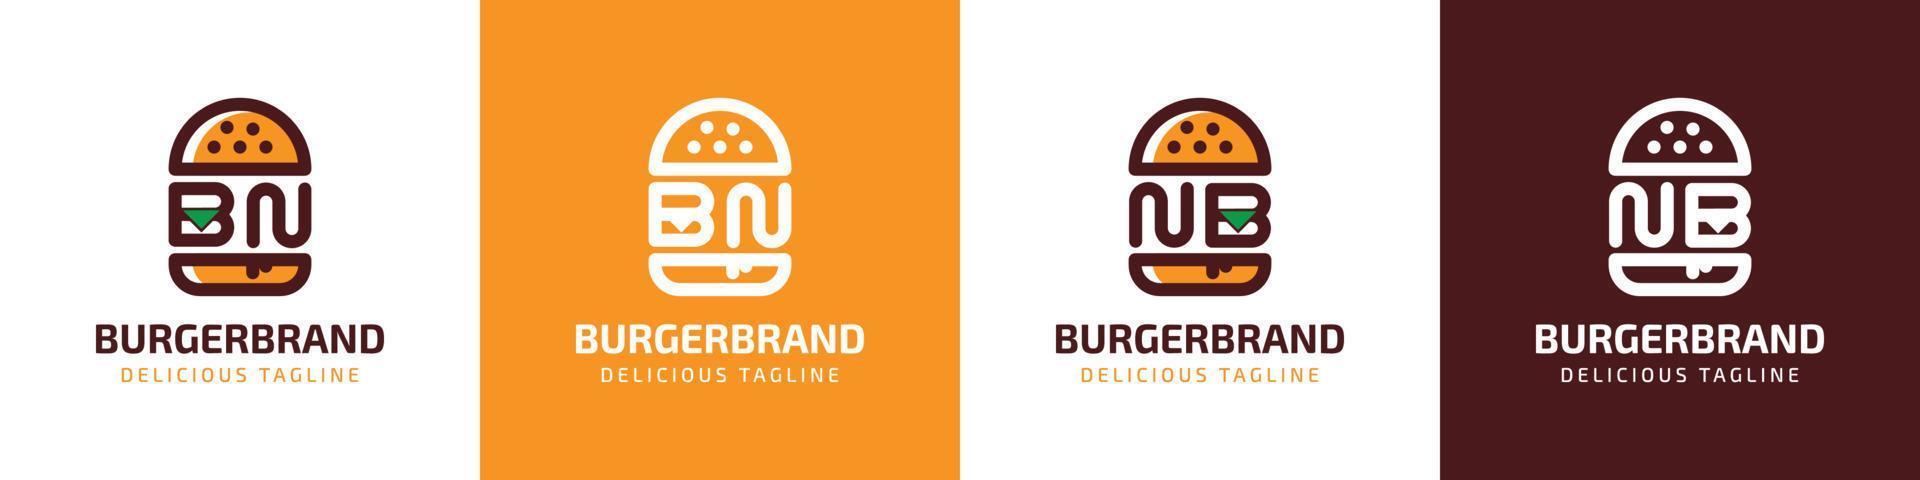 brev bn och nb burger logotyp, lämplig för några företag relaterad till burger med bn eller nb initialer. vektor